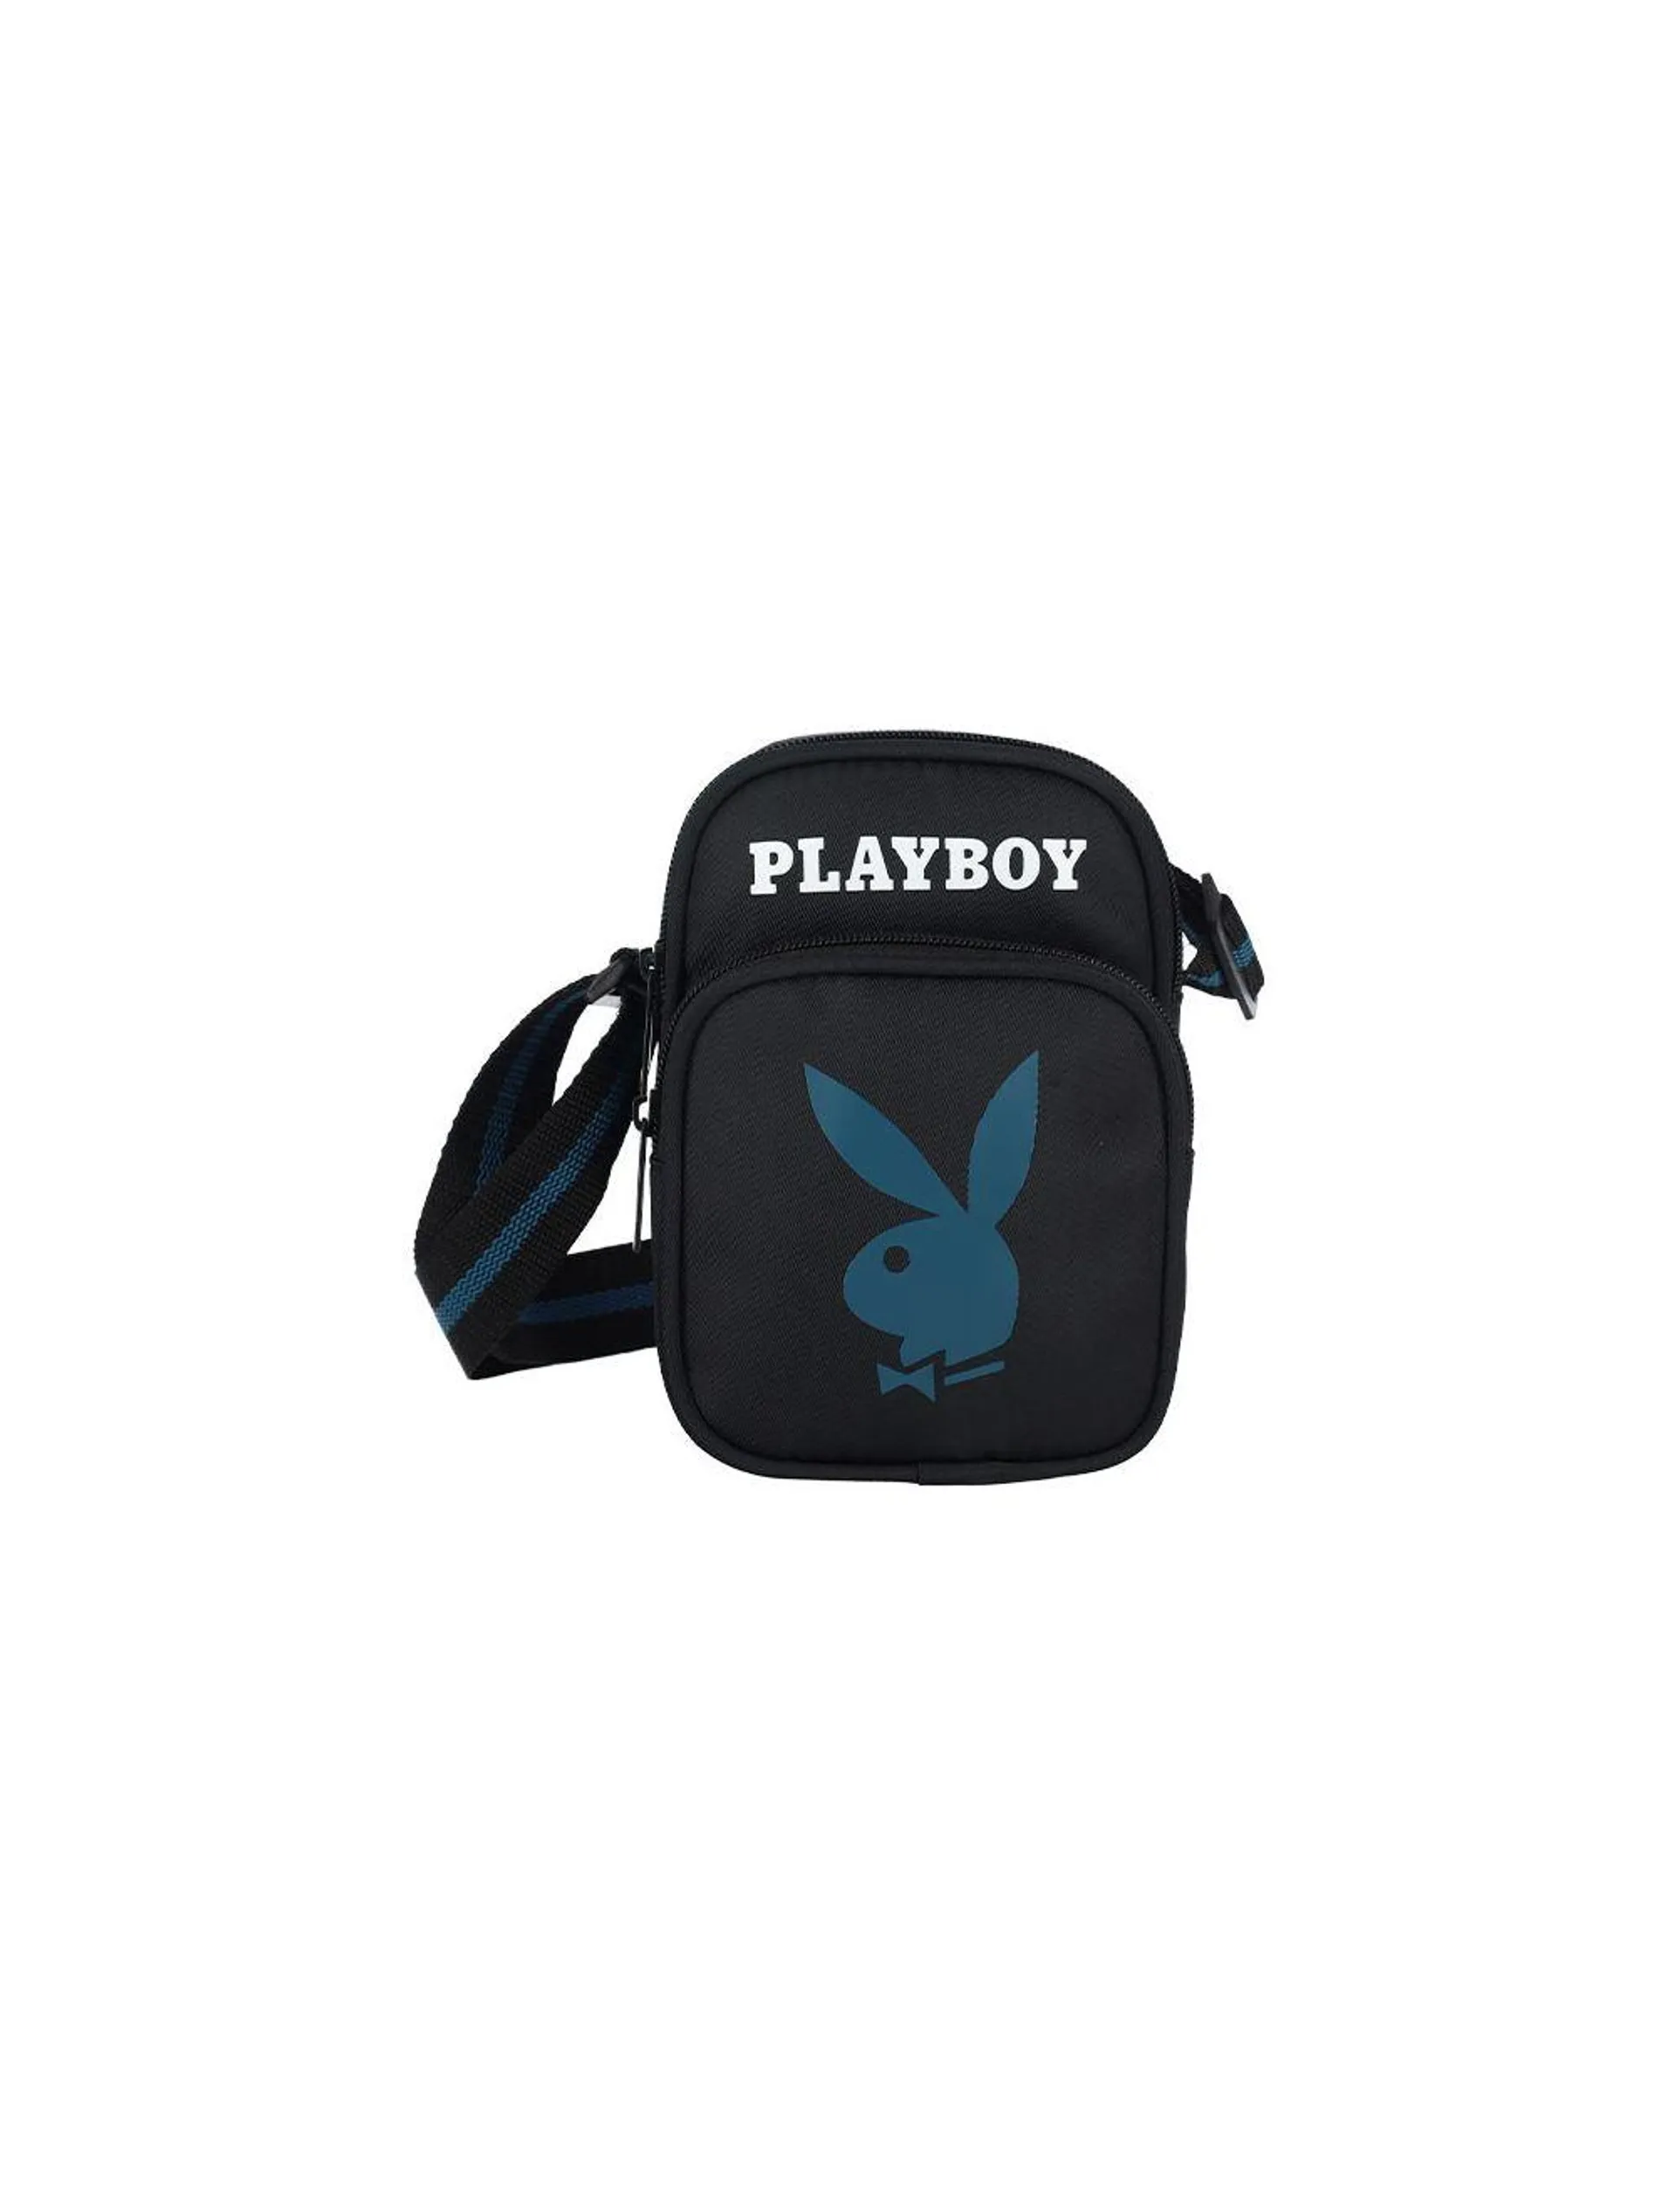 Playboy Rabbit Line Sling Bag Black/Blue